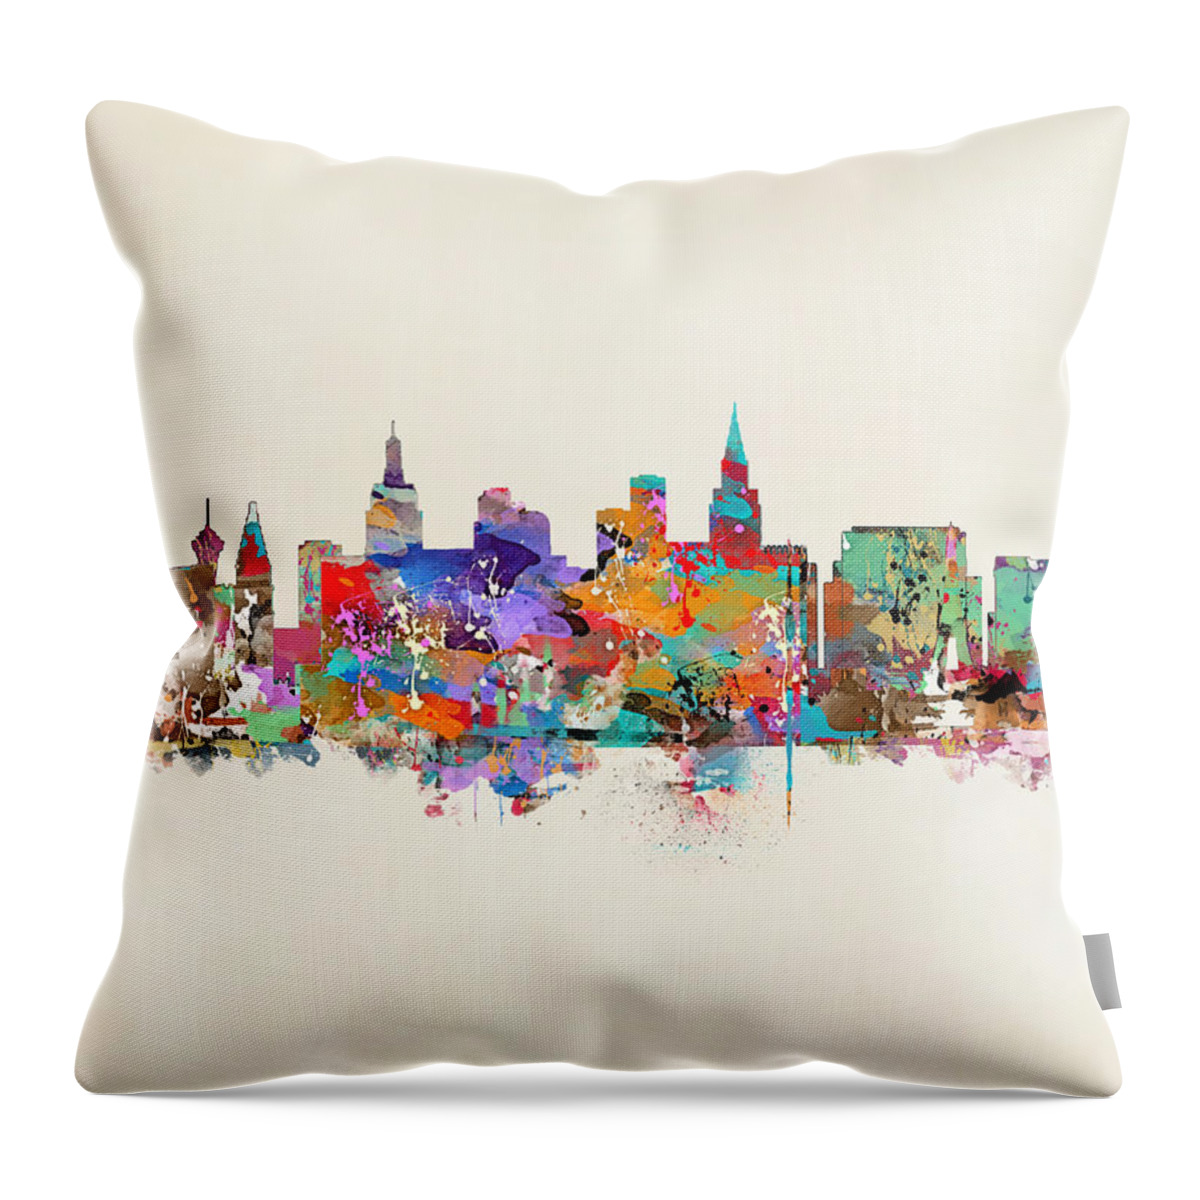 Las Vegas Throw Pillow featuring the painting Las Vegas Skyline by Bri Buckley